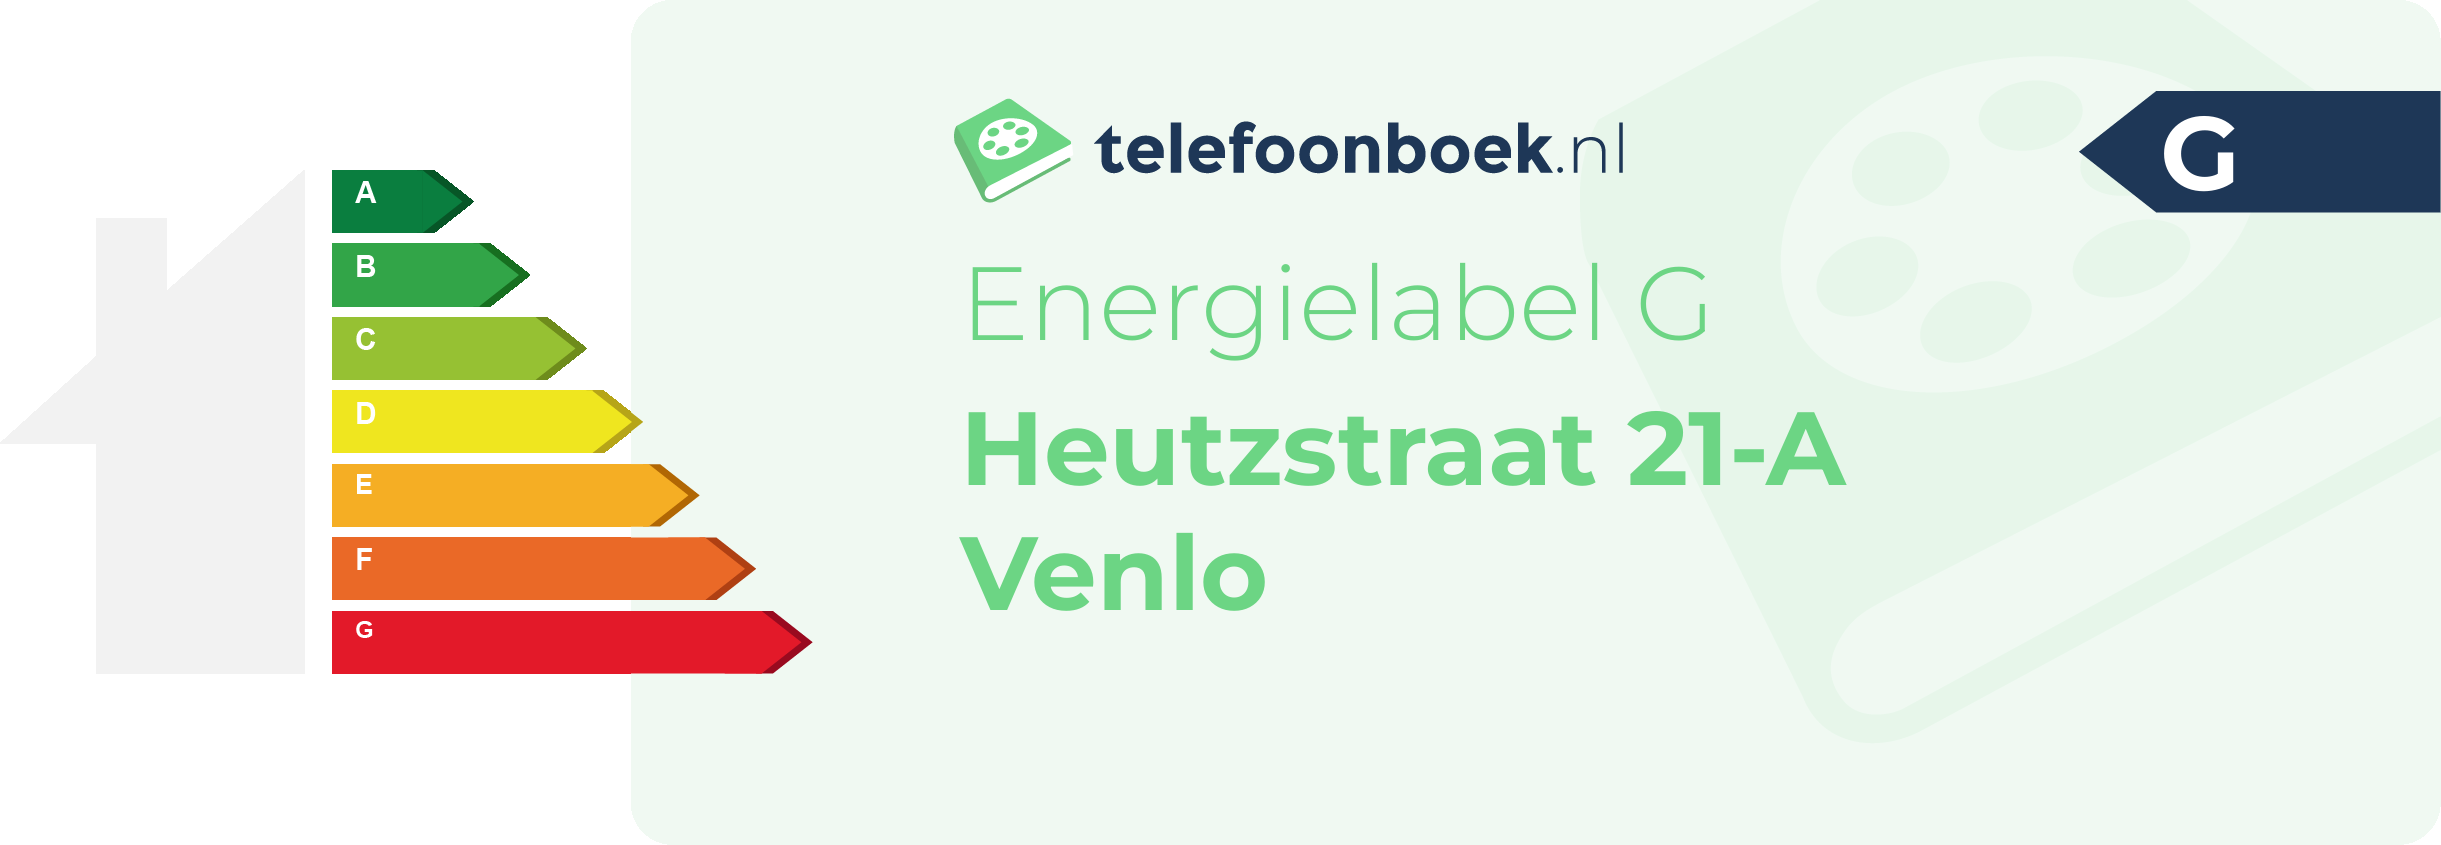 Energielabel Heutzstraat 21-A Venlo